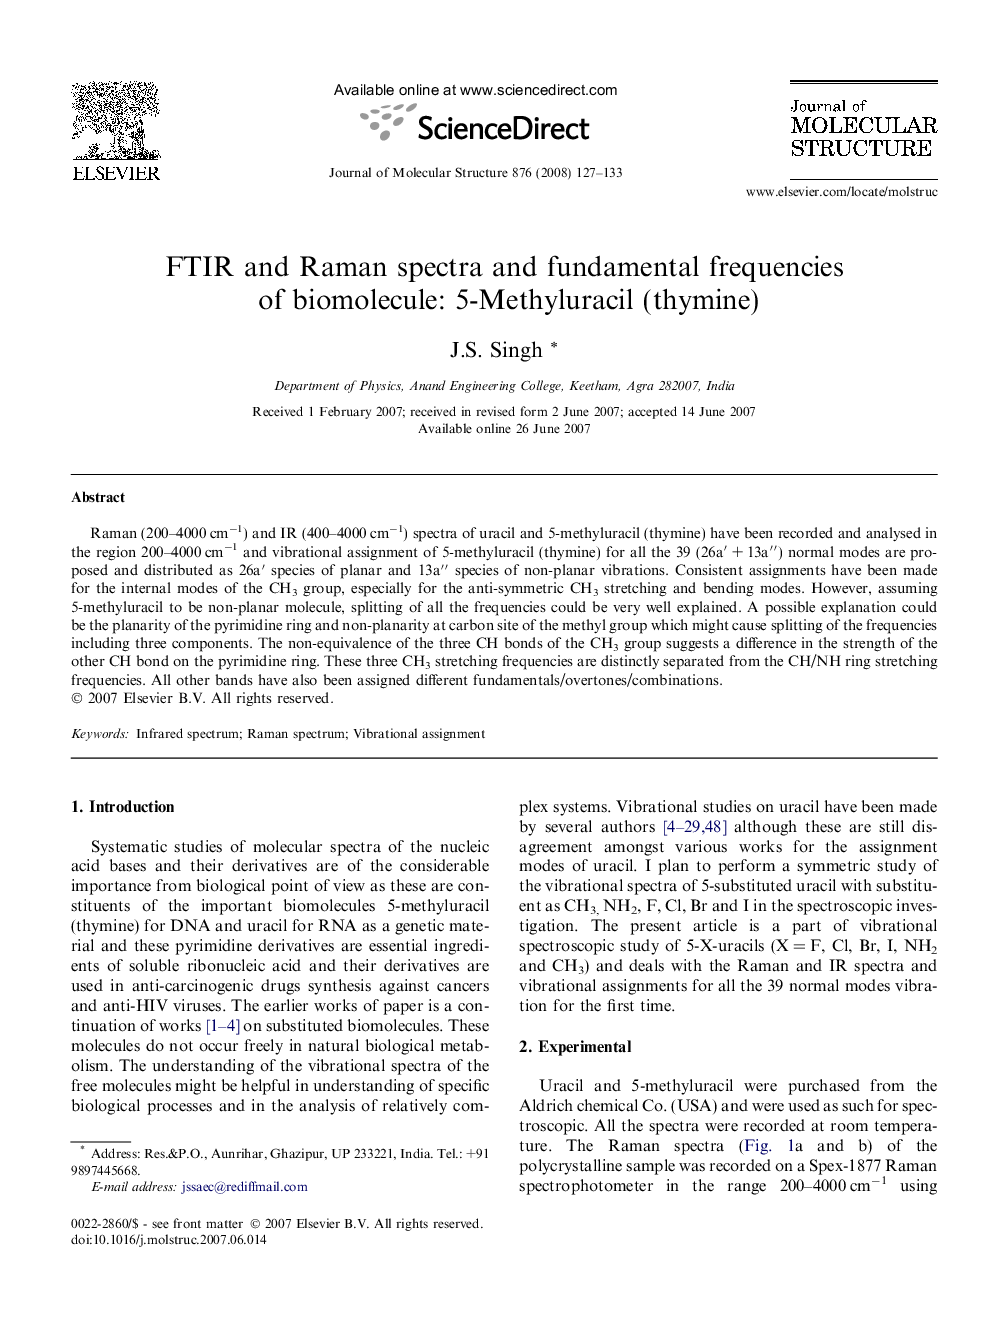 FTIR and Raman spectra and fundamental frequencies of biomolecule: 5-Methyluracil (thymine)